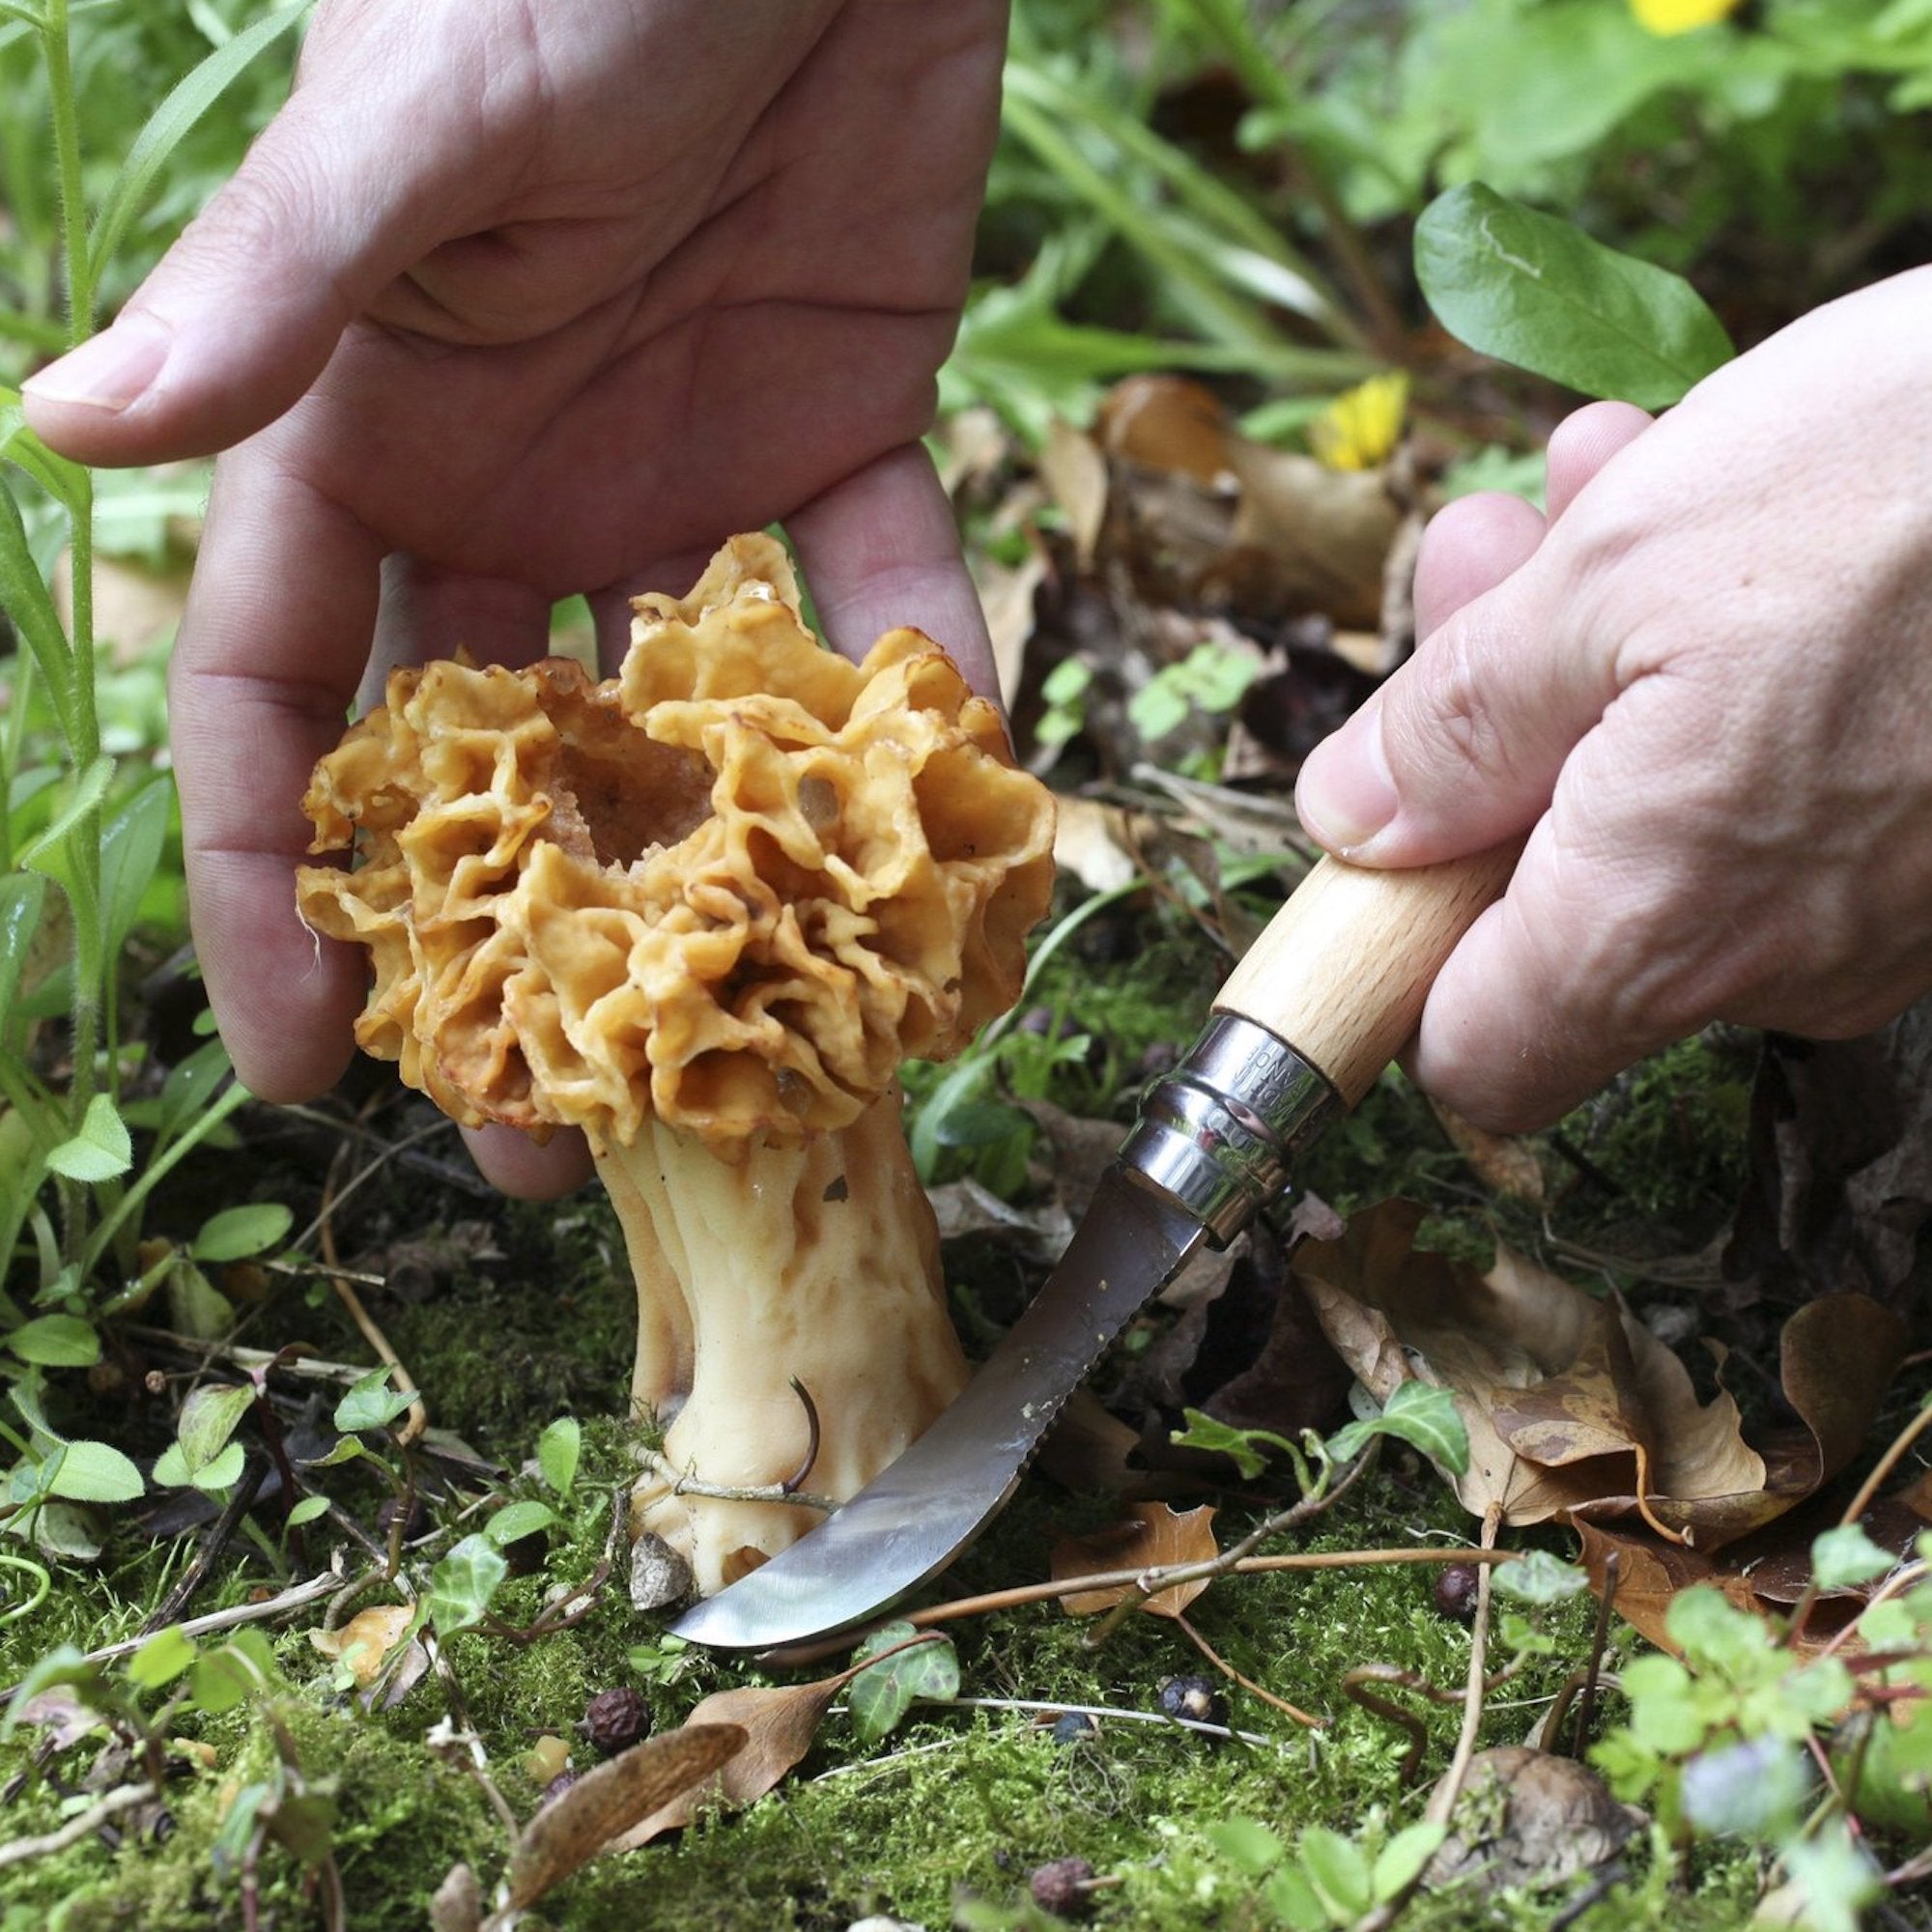 Mushroom Brush